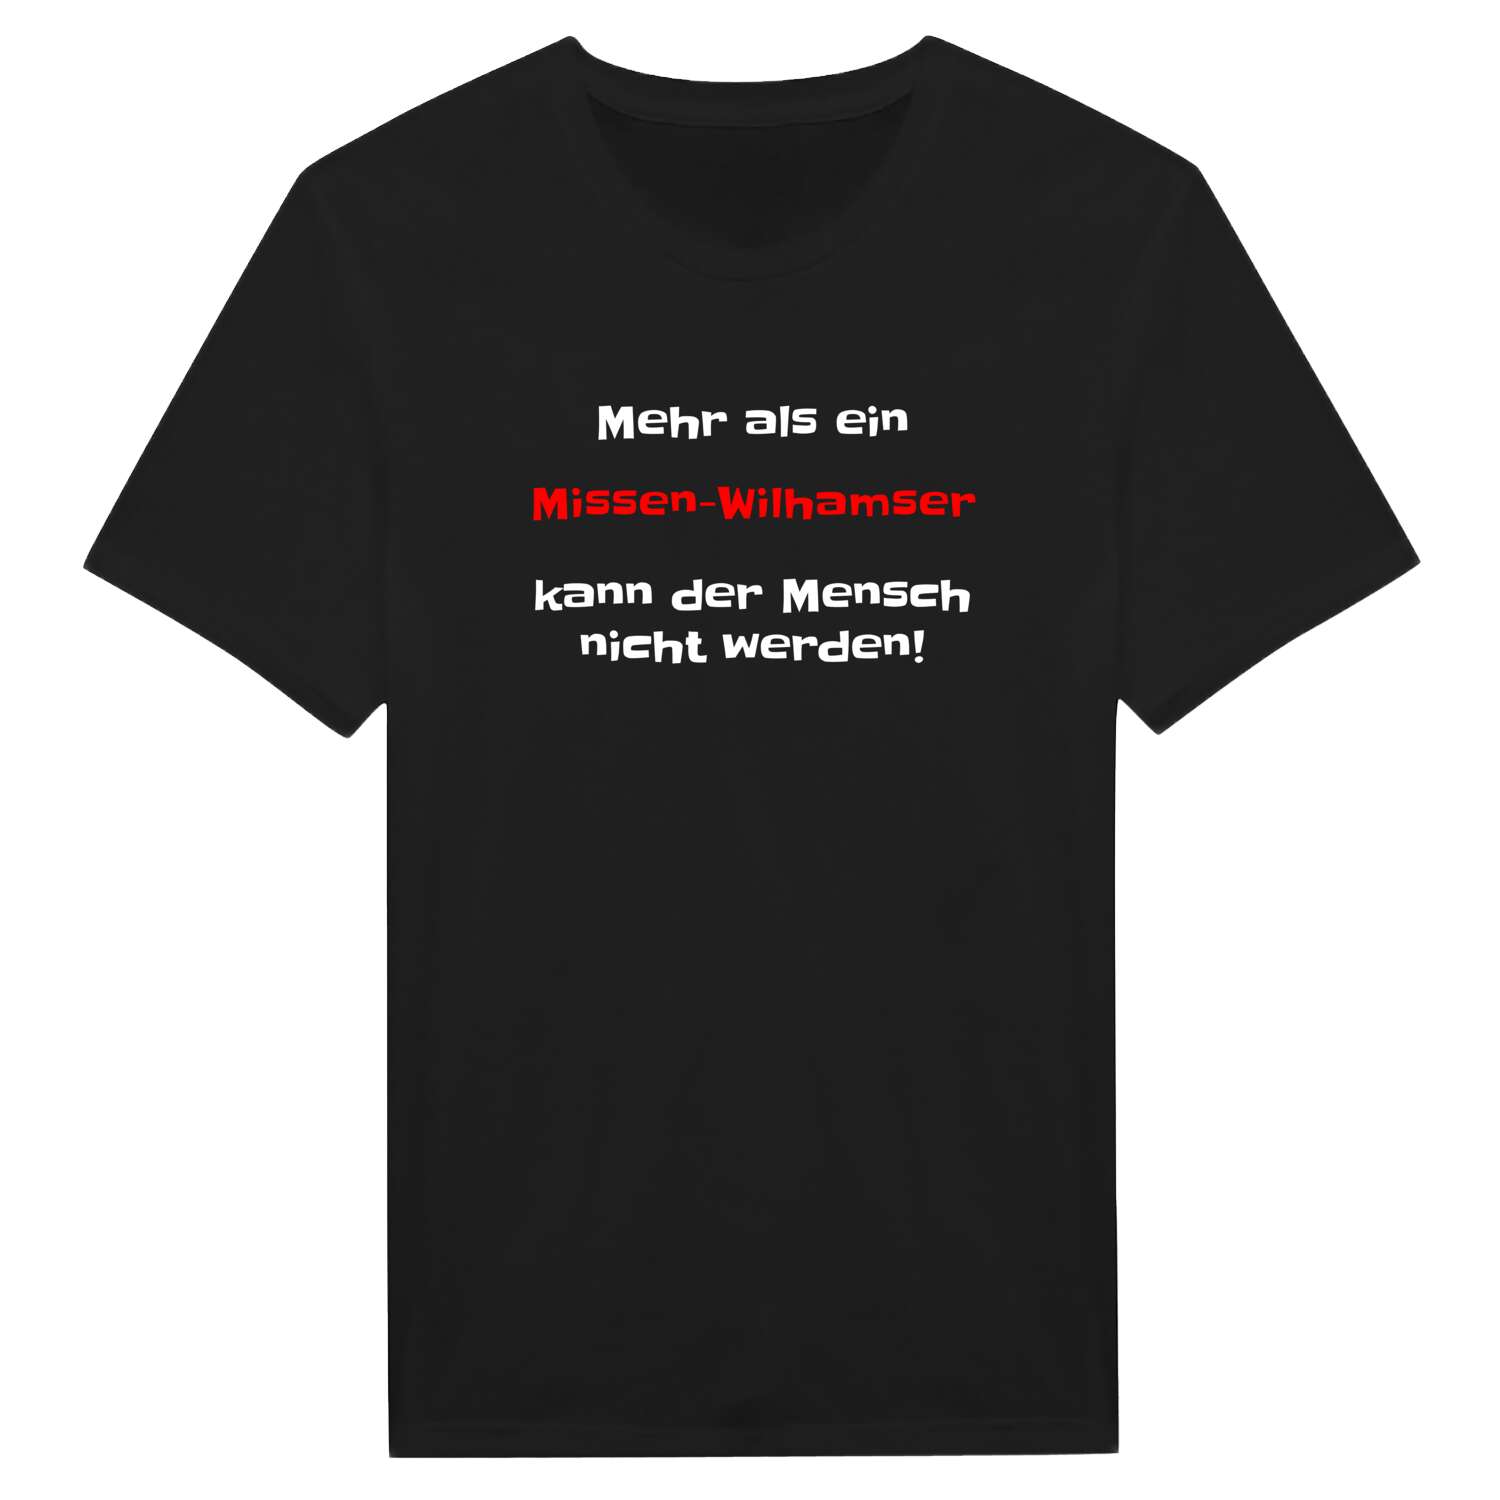 Missen-Wilhams T-Shirt »Mehr als ein«